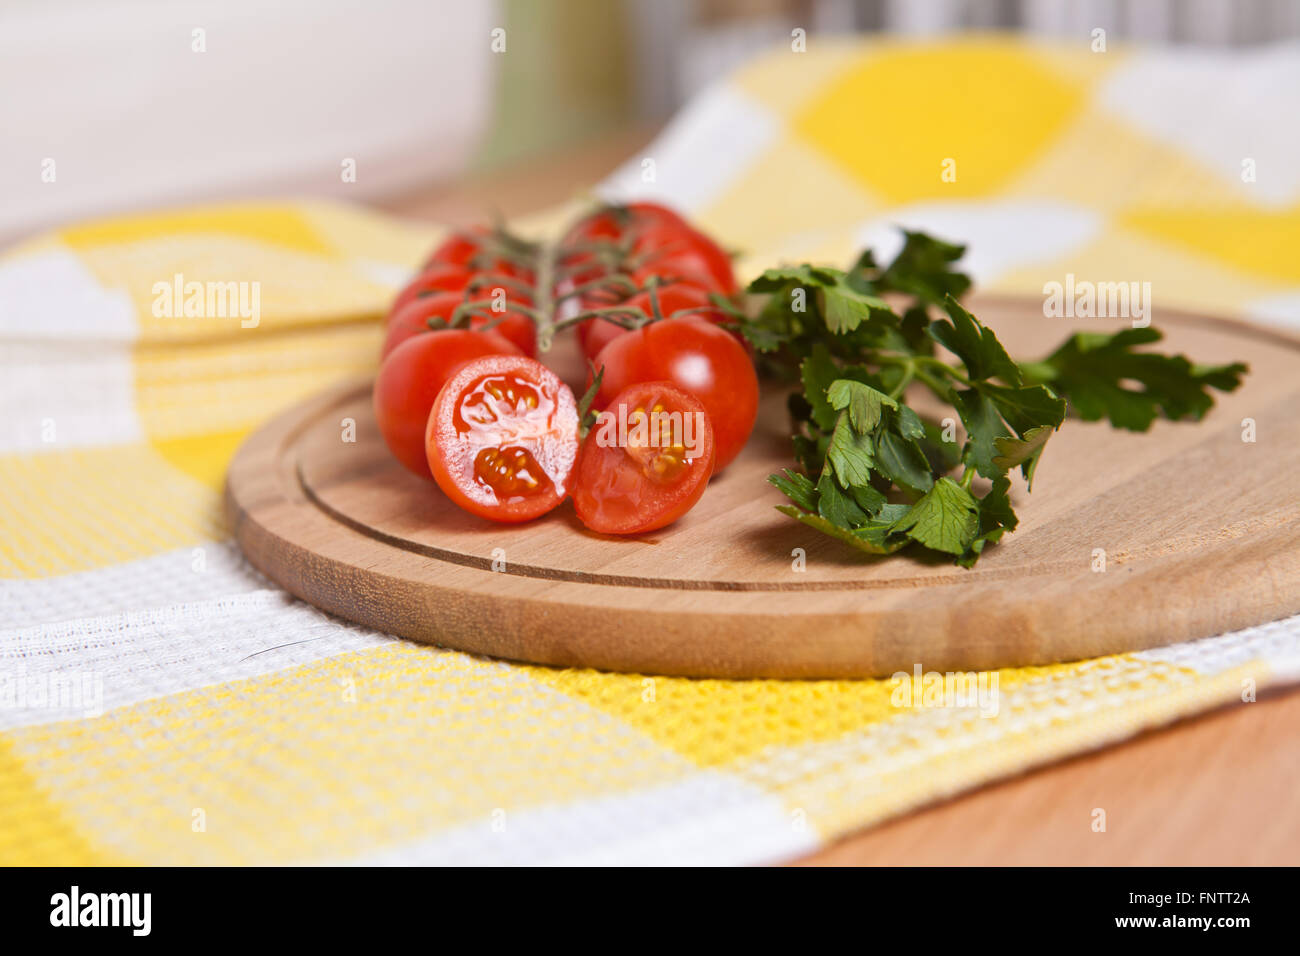 Tomates cerises, concombres et persil close-up sur la carte Banque D'Images